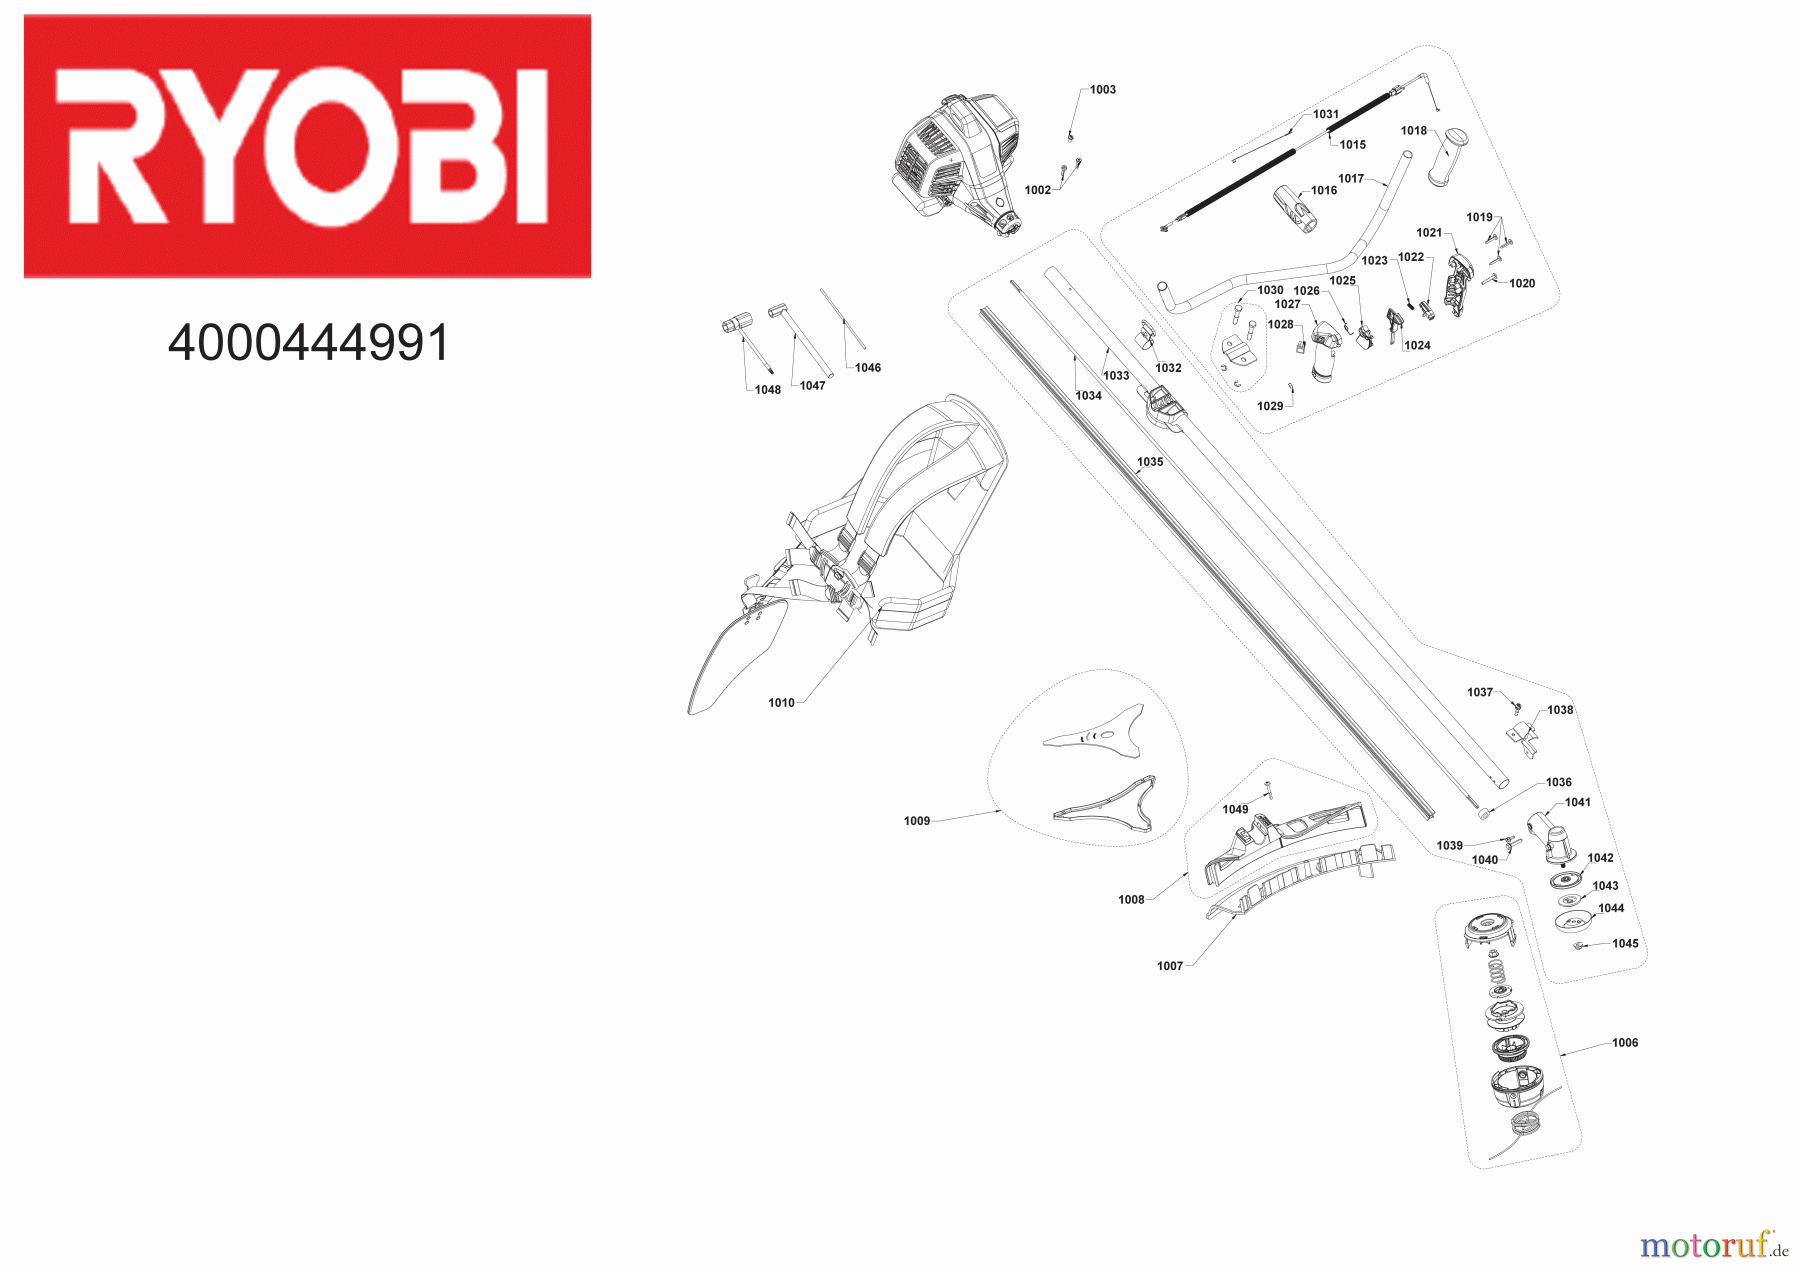  Ryobi Sensen Freischneider Benzin RBC31SBO 31 cm³ 2-Takt Motorsense mit Bikehandle-Griff 4000444991 Seite 1